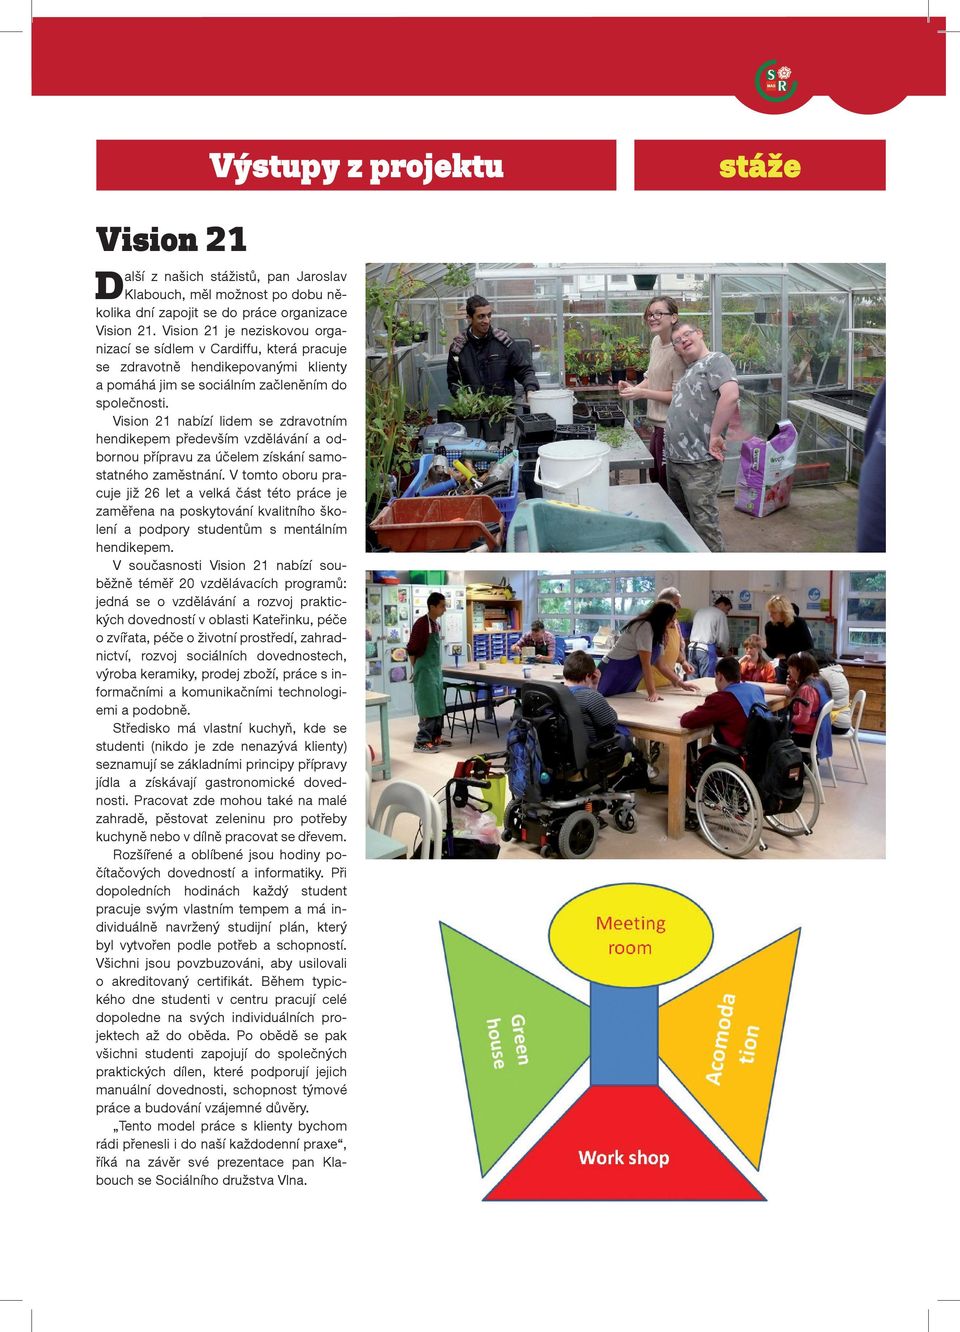 Vision 21 nabízí lidem se zdravotním hendikepem především vzdělávání a odbornou přípravu za účelem získání samostatného zaměstnání.